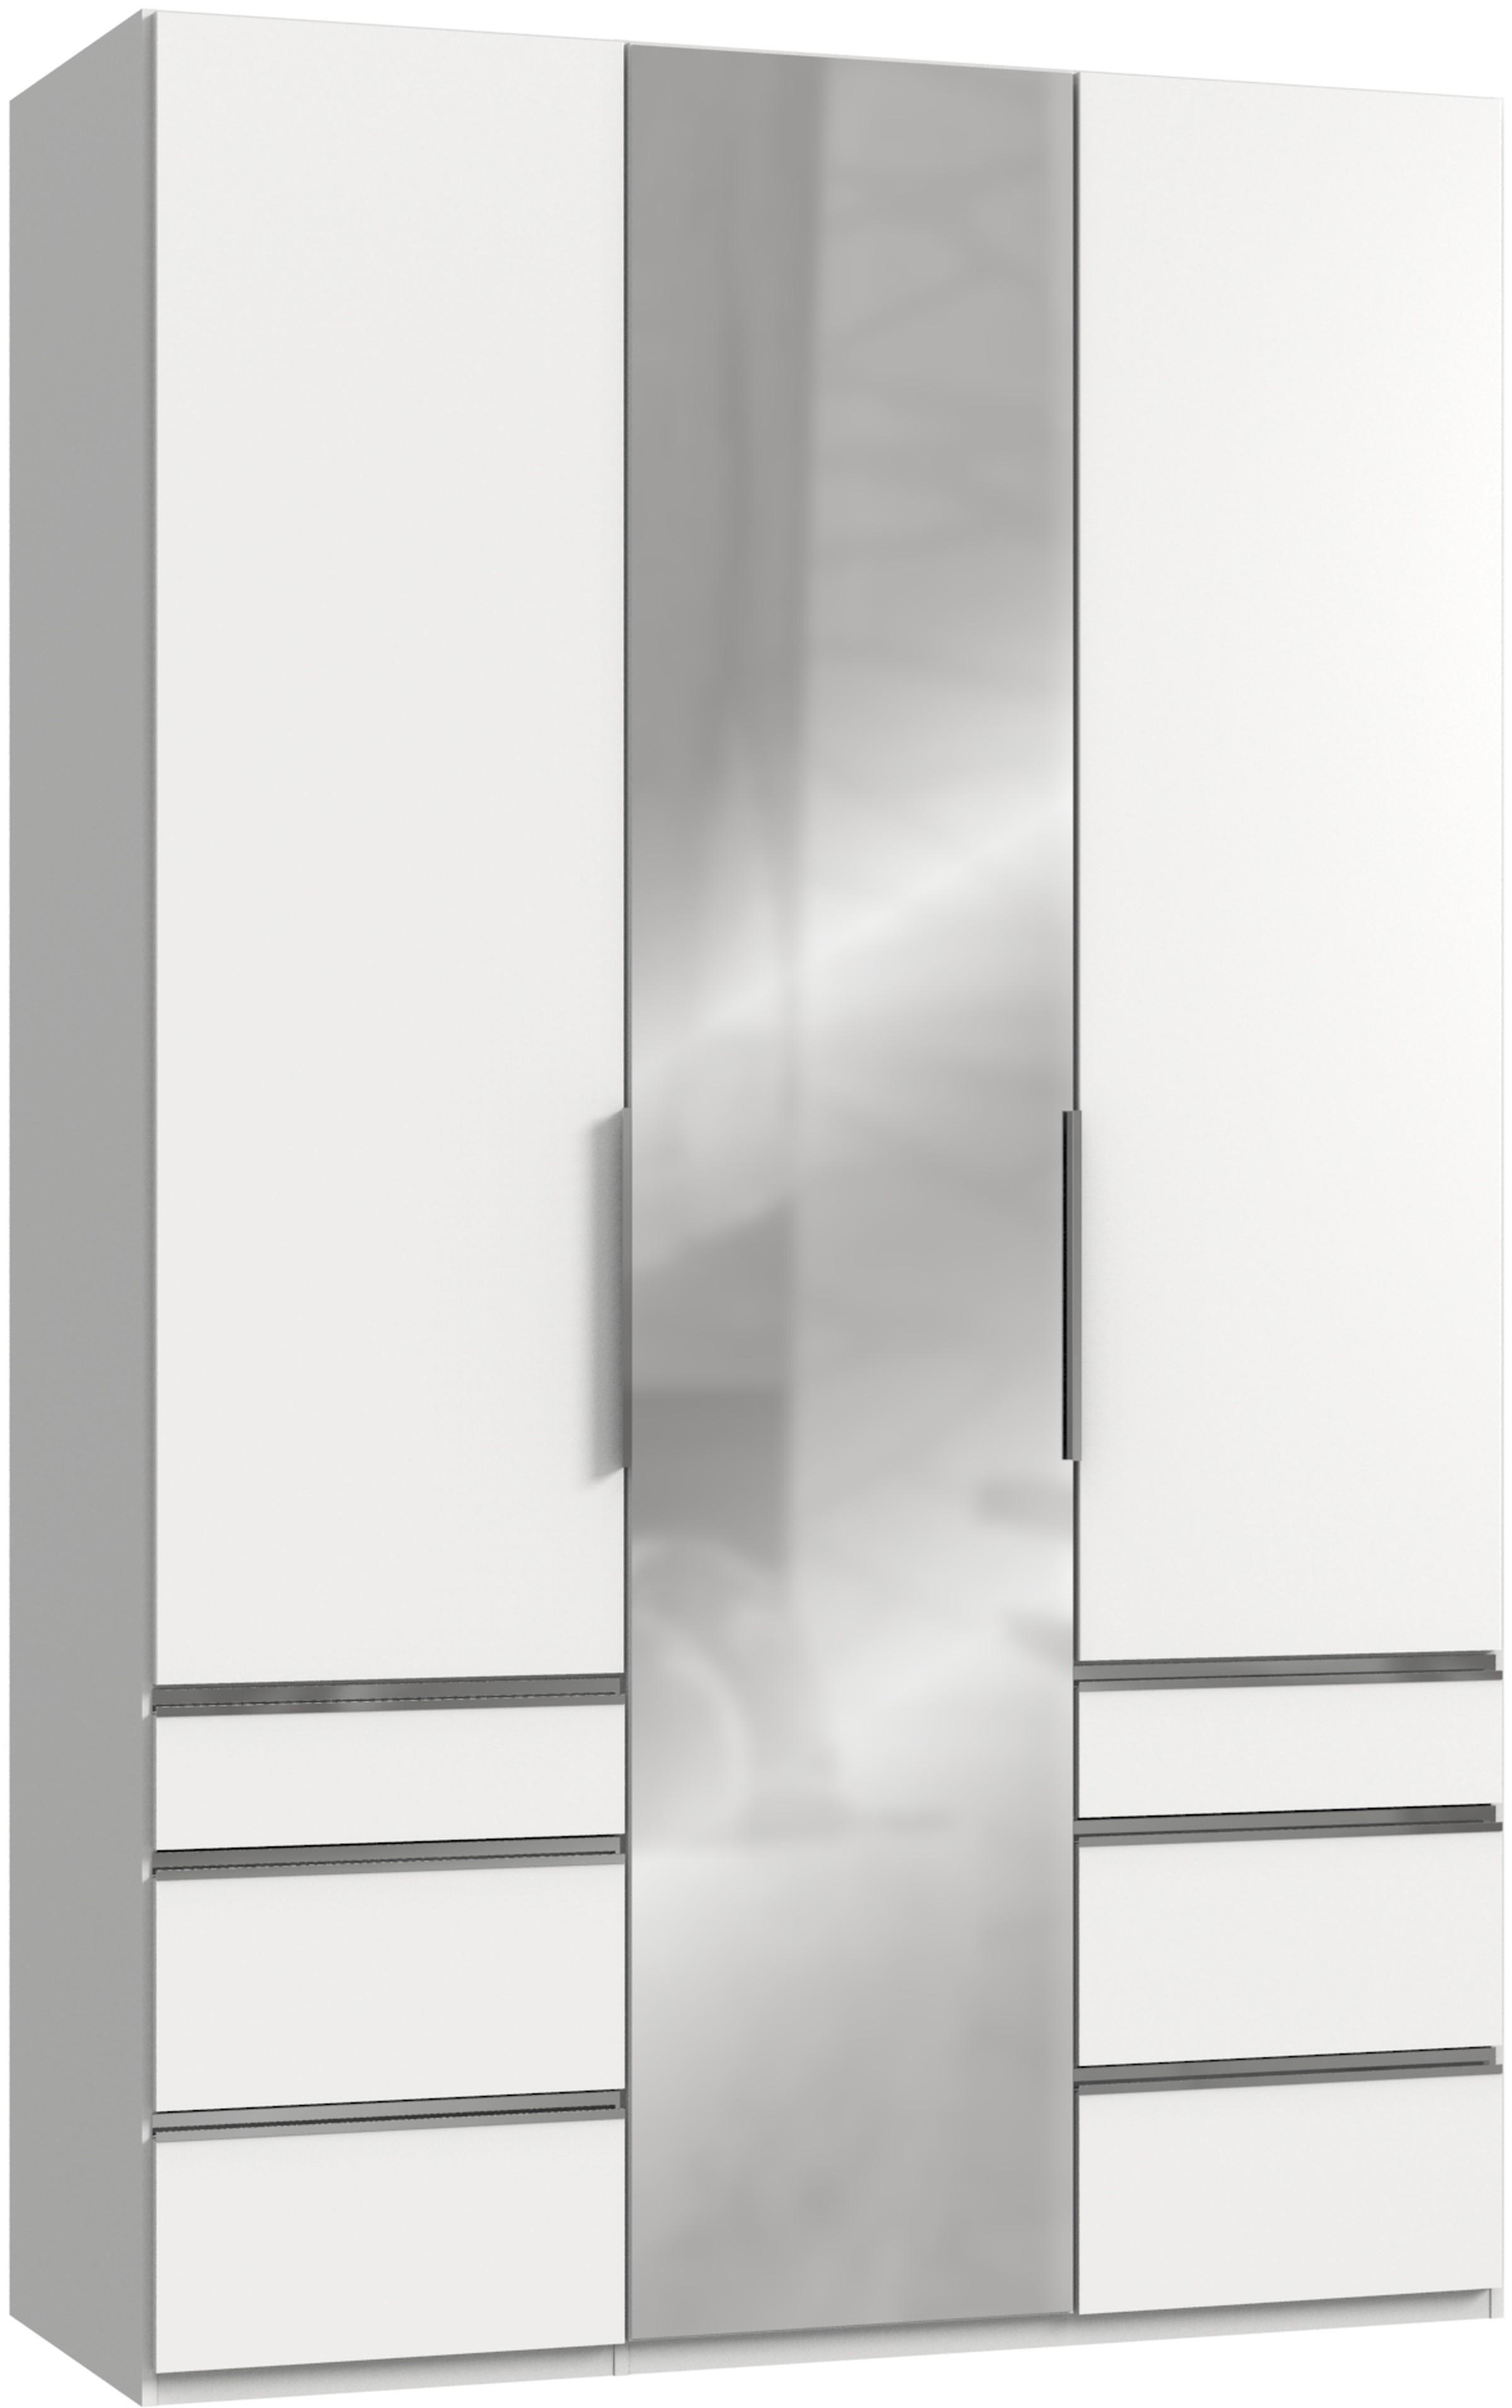 Drehtürenschrank mit Laden B: 150 cm Level, Grau/Weiß - Chromfarben/Weiß, MODERN, Holzwerkstoff (150/236/58cm) - MID.YOU